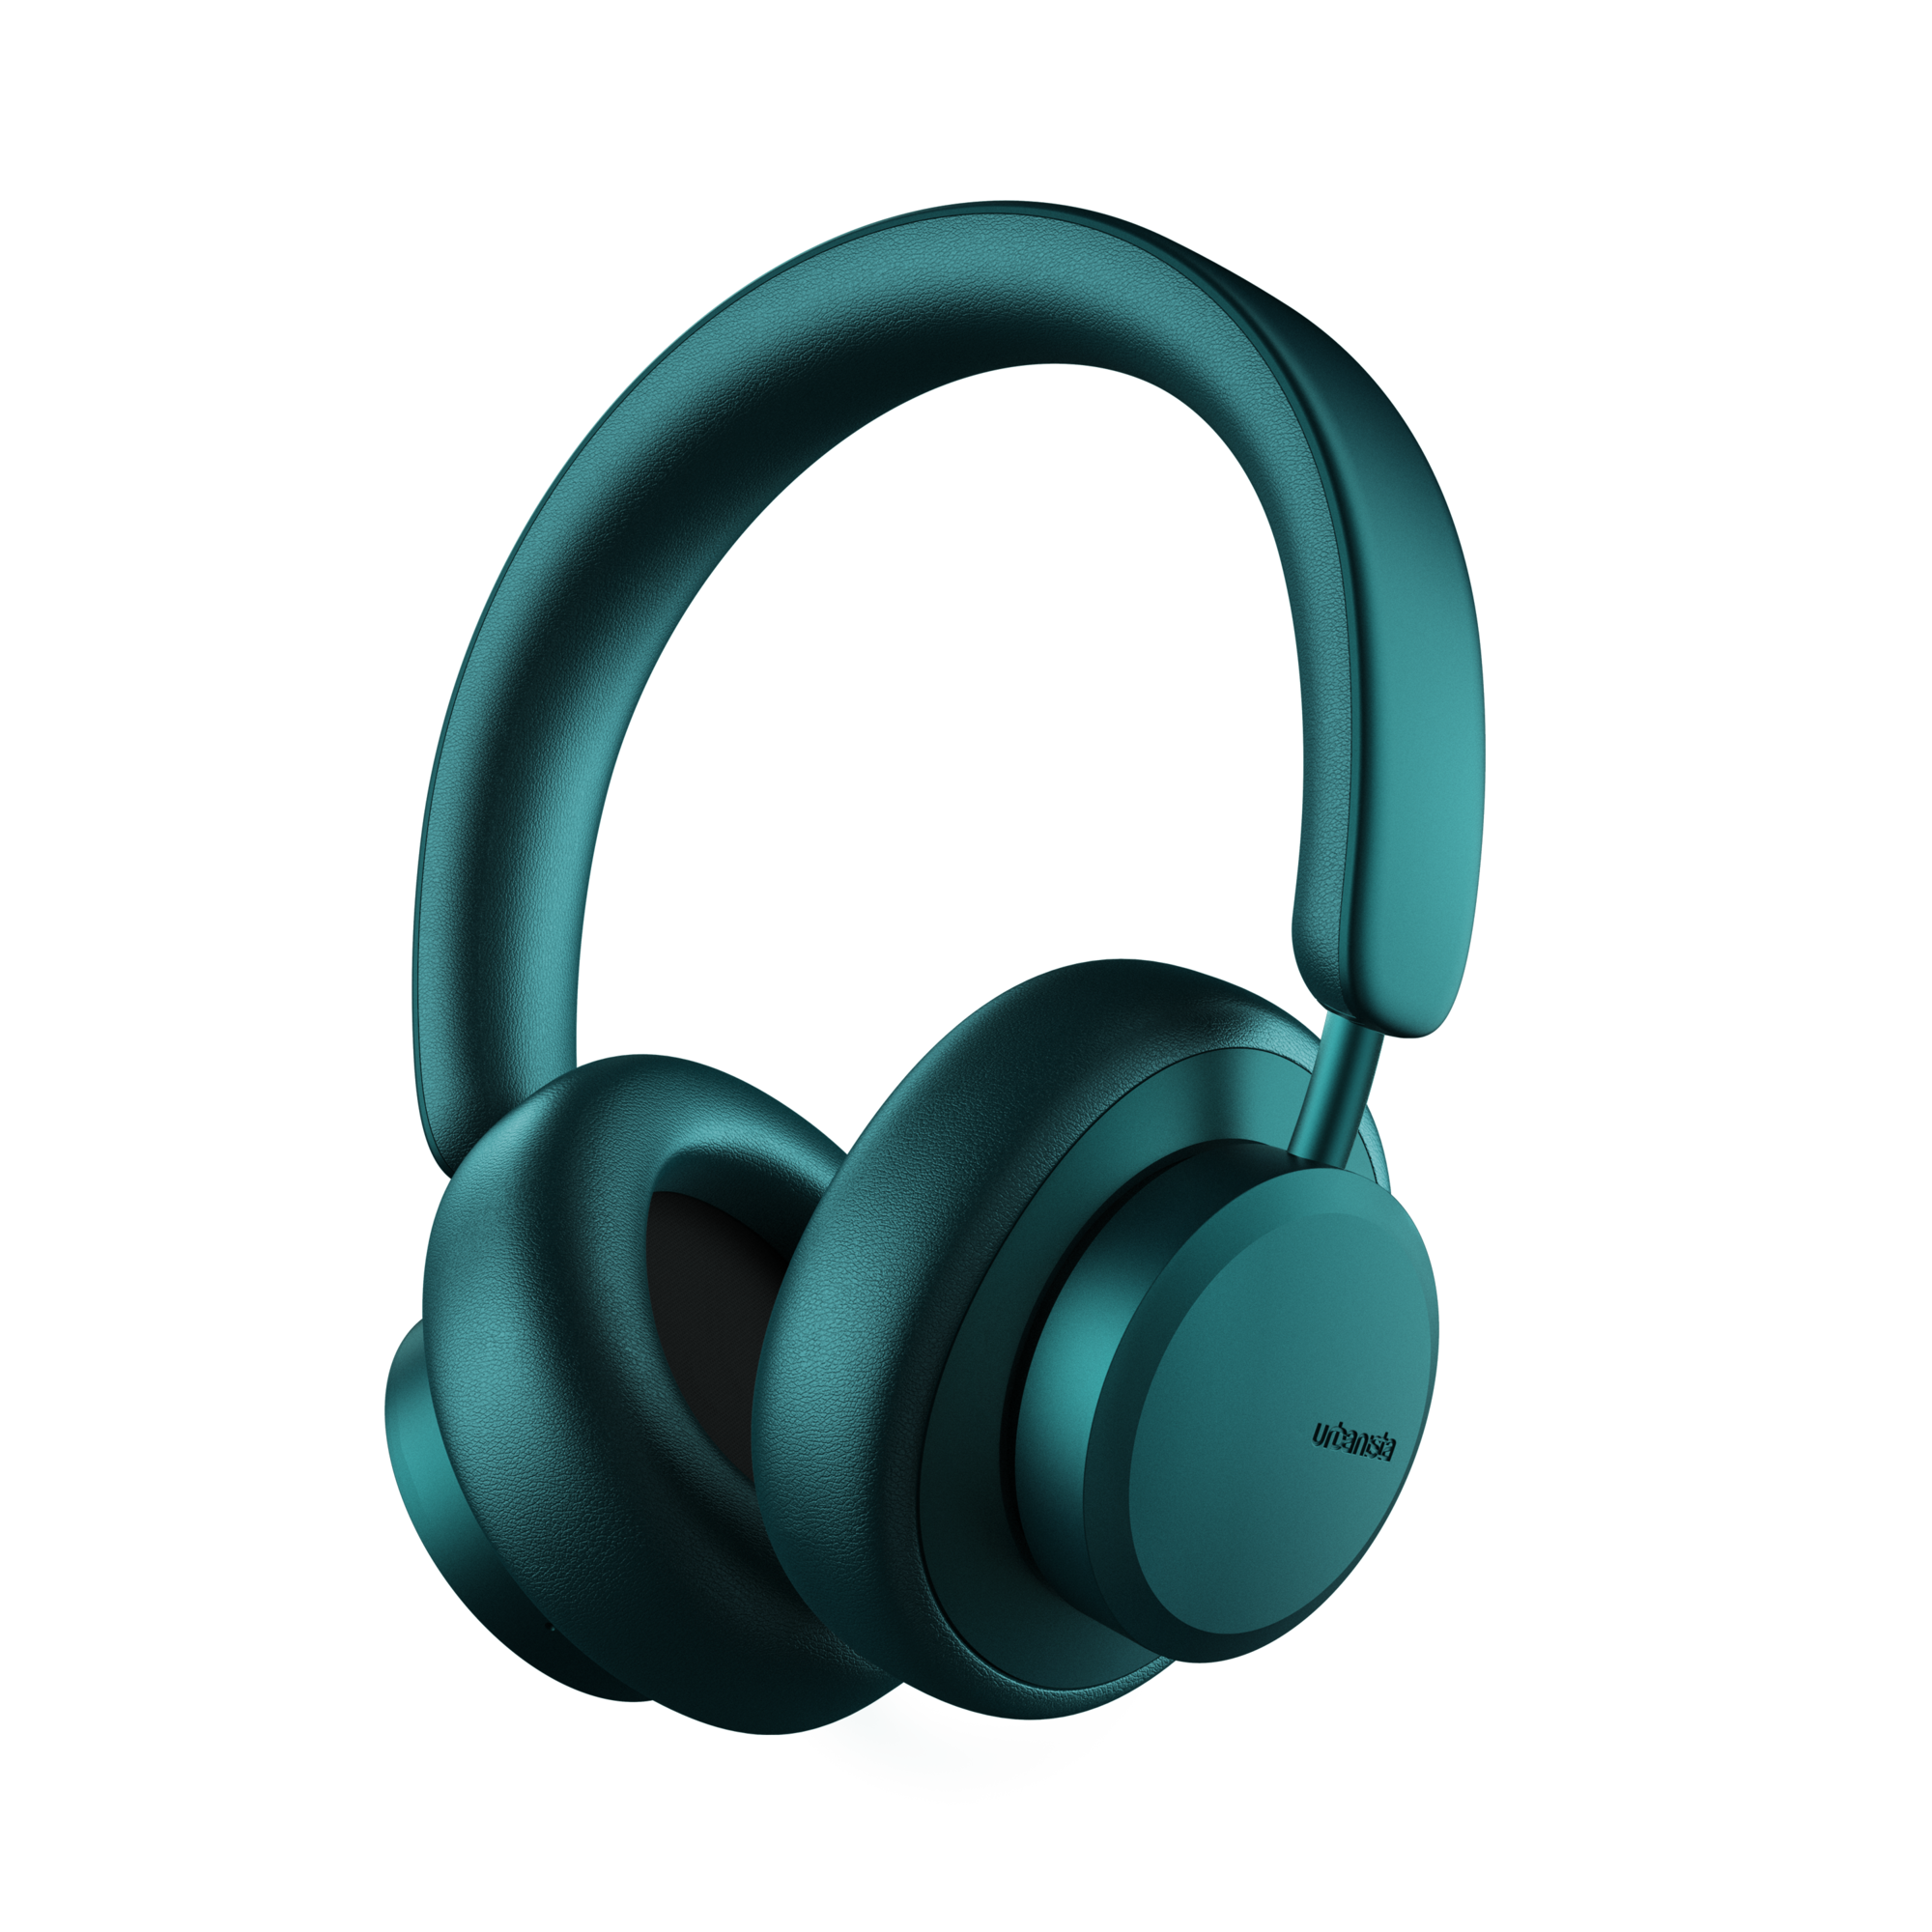 Casti audio Over-Ear Urbanista Miami, Wireless, Bluetooth 5.0, Microfon, ANC, autonomie de pana la 50 ore, incarcare USB-C, verde